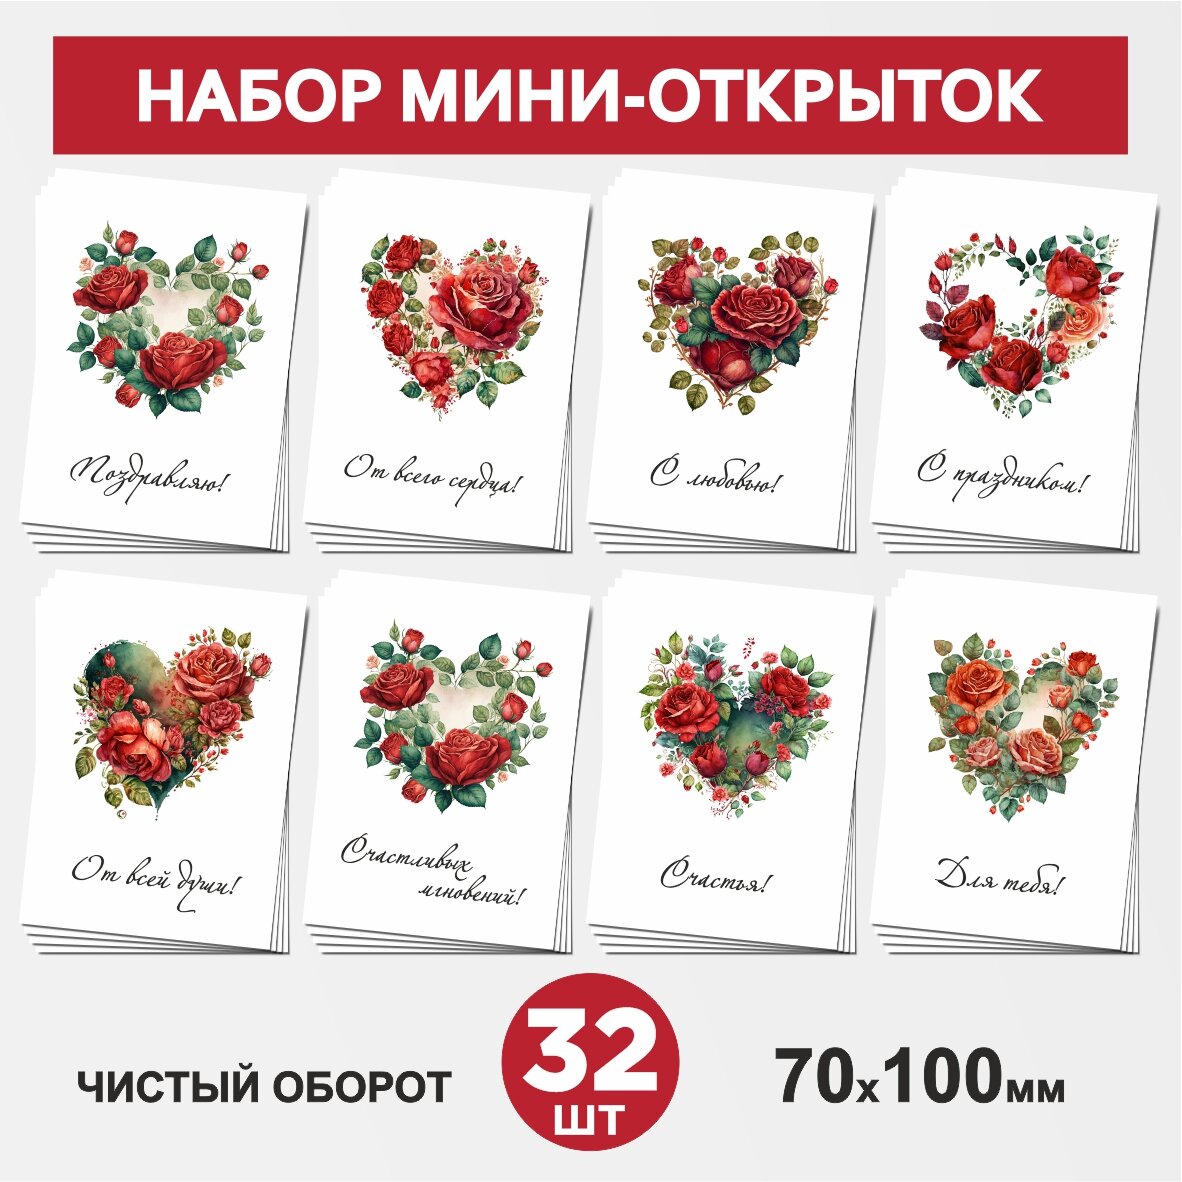 Набор мини-открыток 32 шт, 70х100мм, бирки, карточки для подарков на 14 февраля, 8 Марта, День Рождения - Сердце, цветы №3, postcard_32_heart_set_3